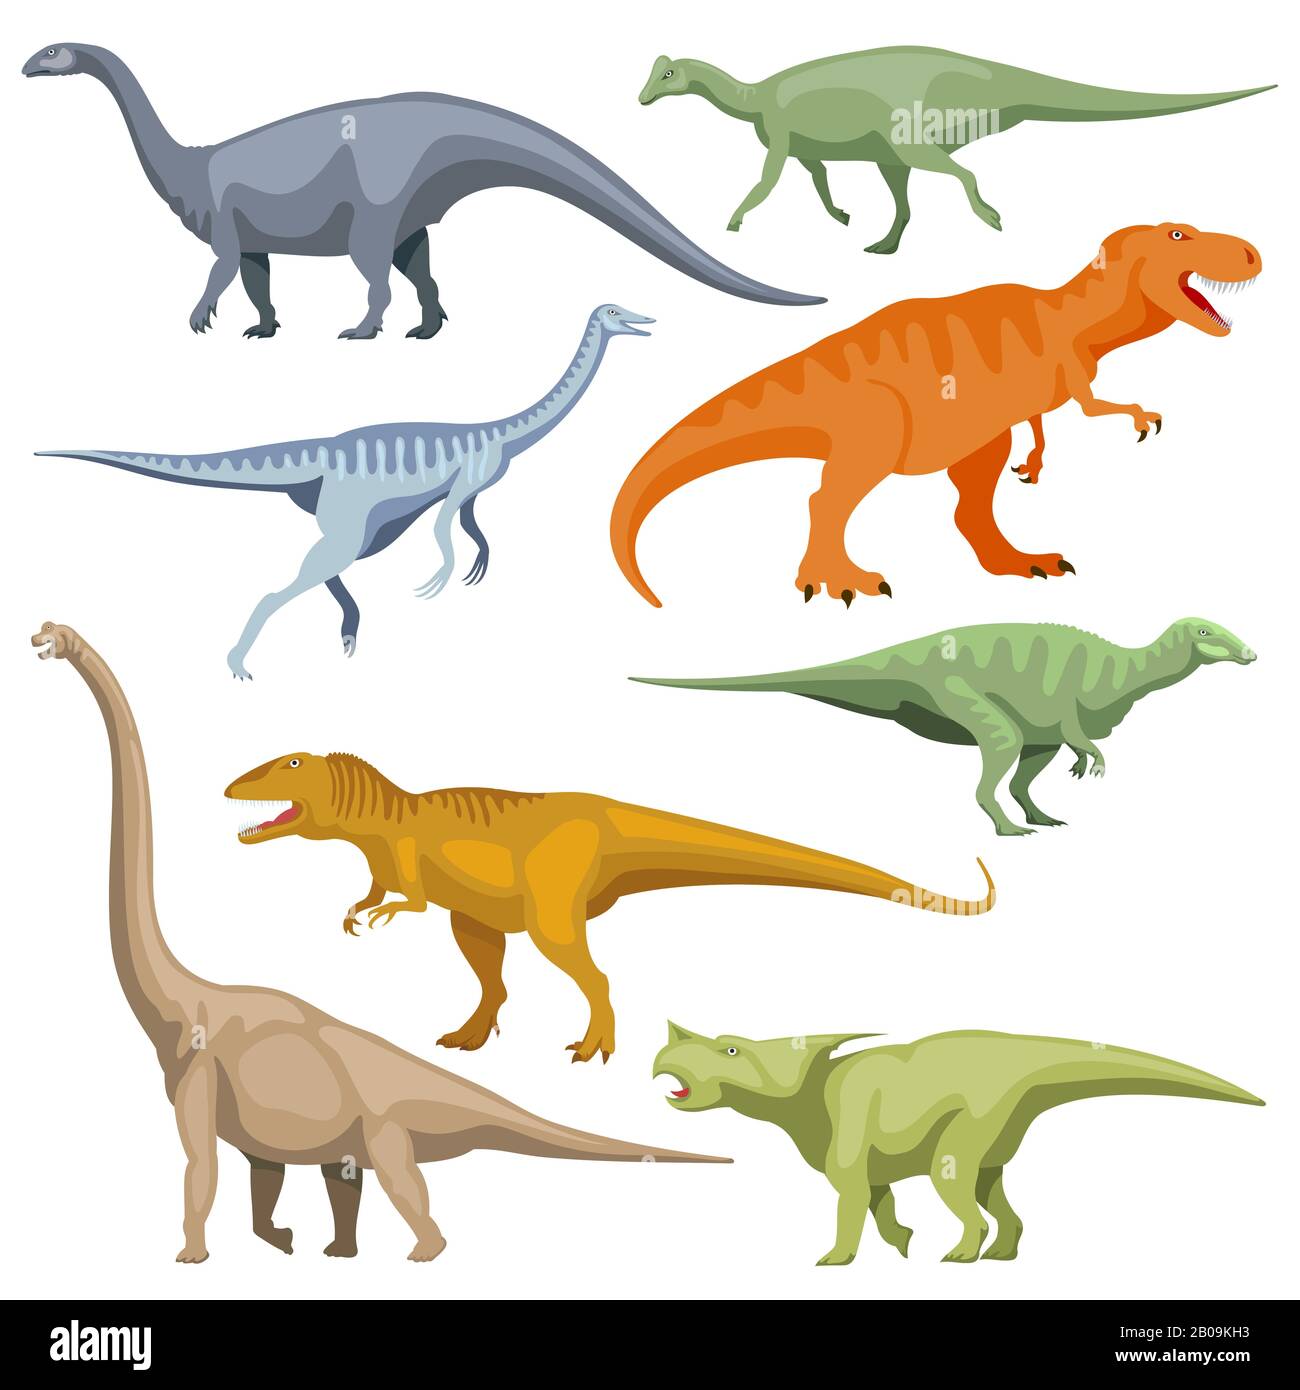 Dinosaurus de caricature, vecteur de reptiles. Ensemble de dinosaures de caricature couleur, illustration d'un dinosaure préhistorique prédateur Illustration de Vecteur